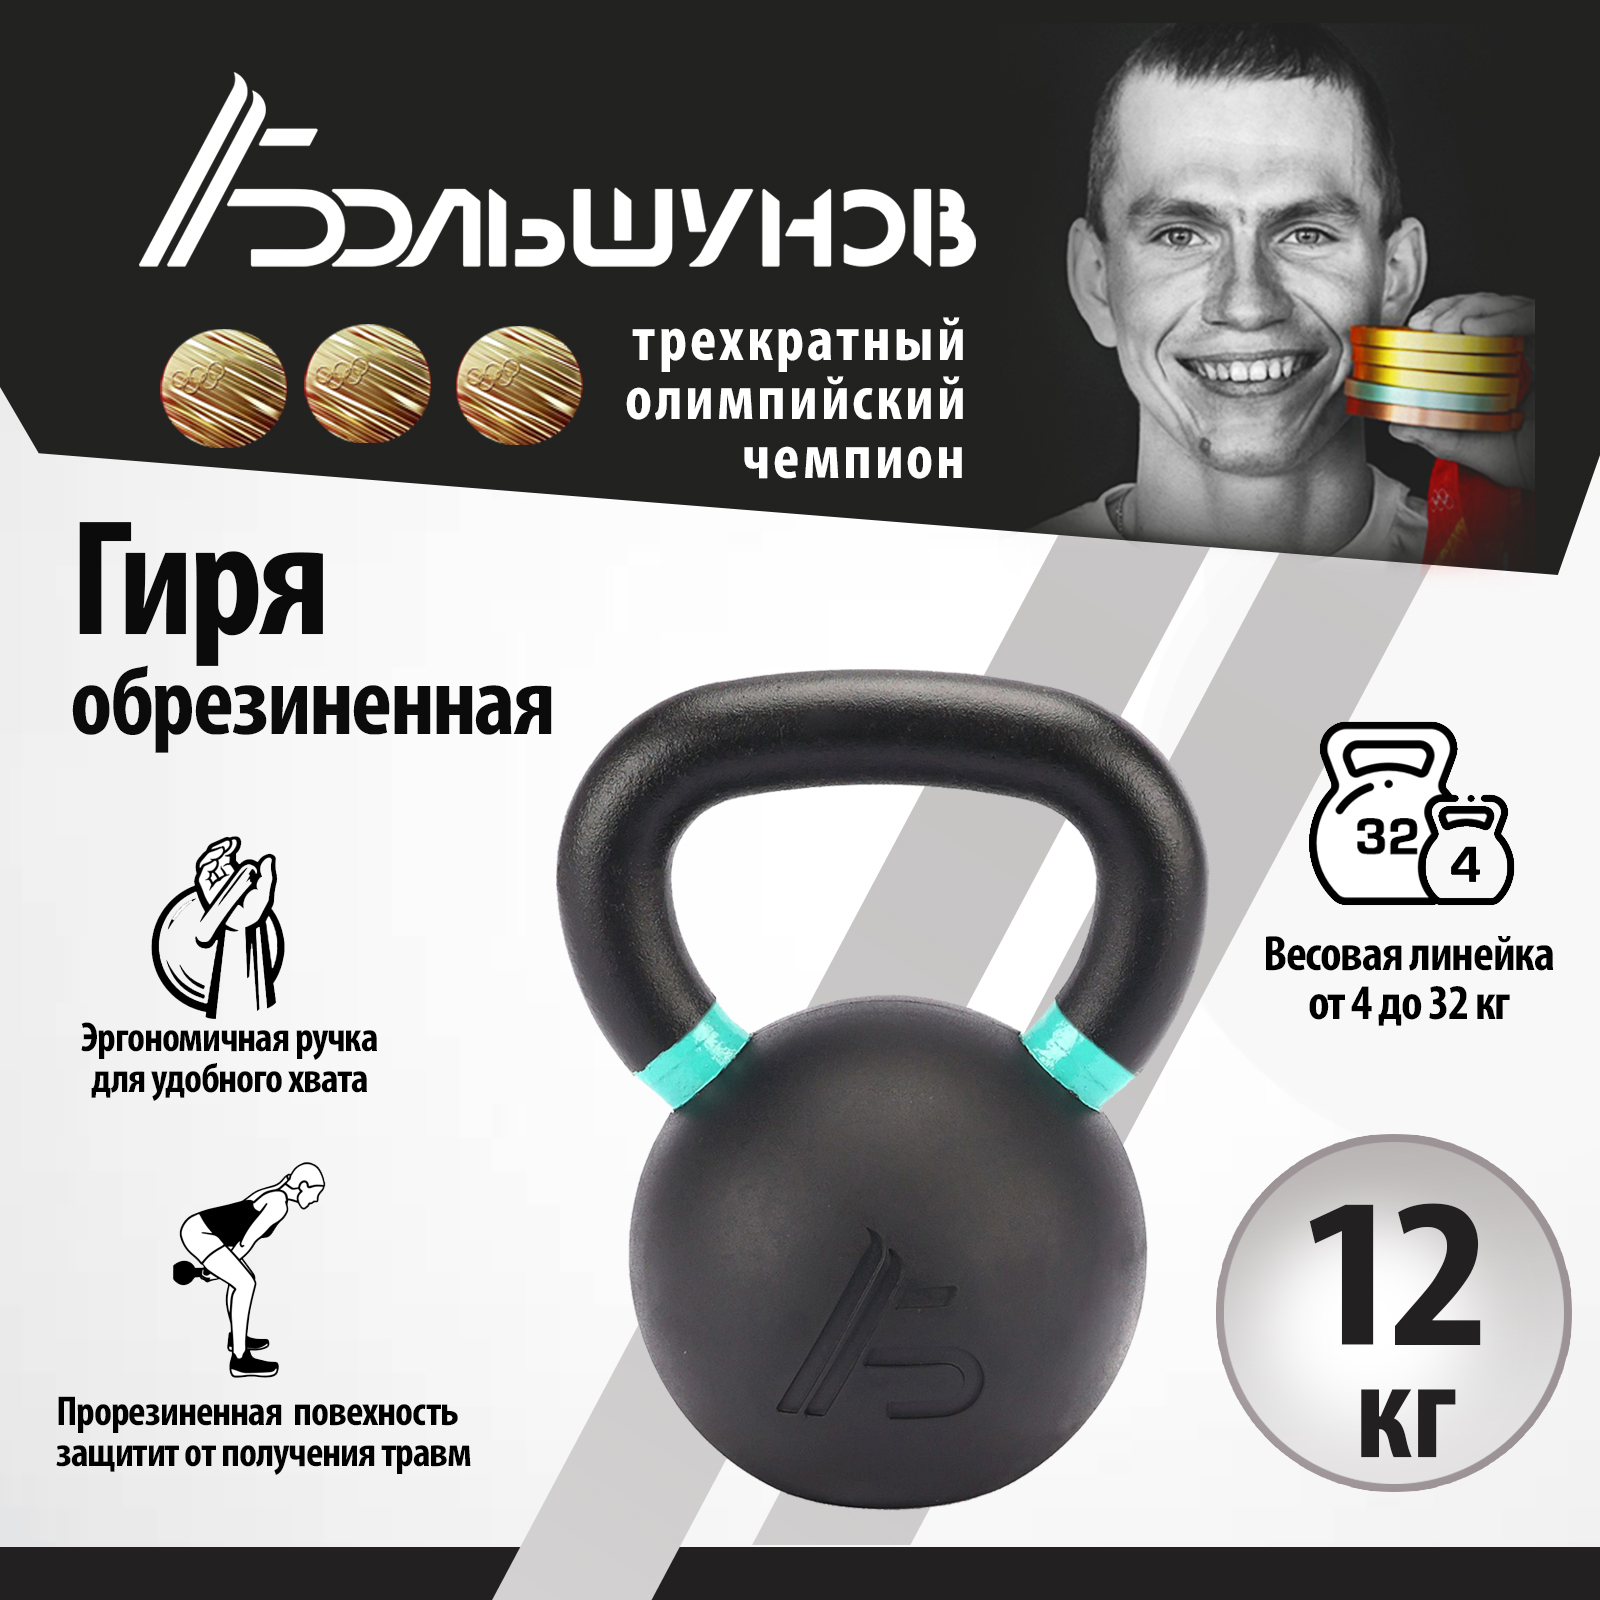 Обрезиненная гиря Александр Большунов, черная, 12 кг